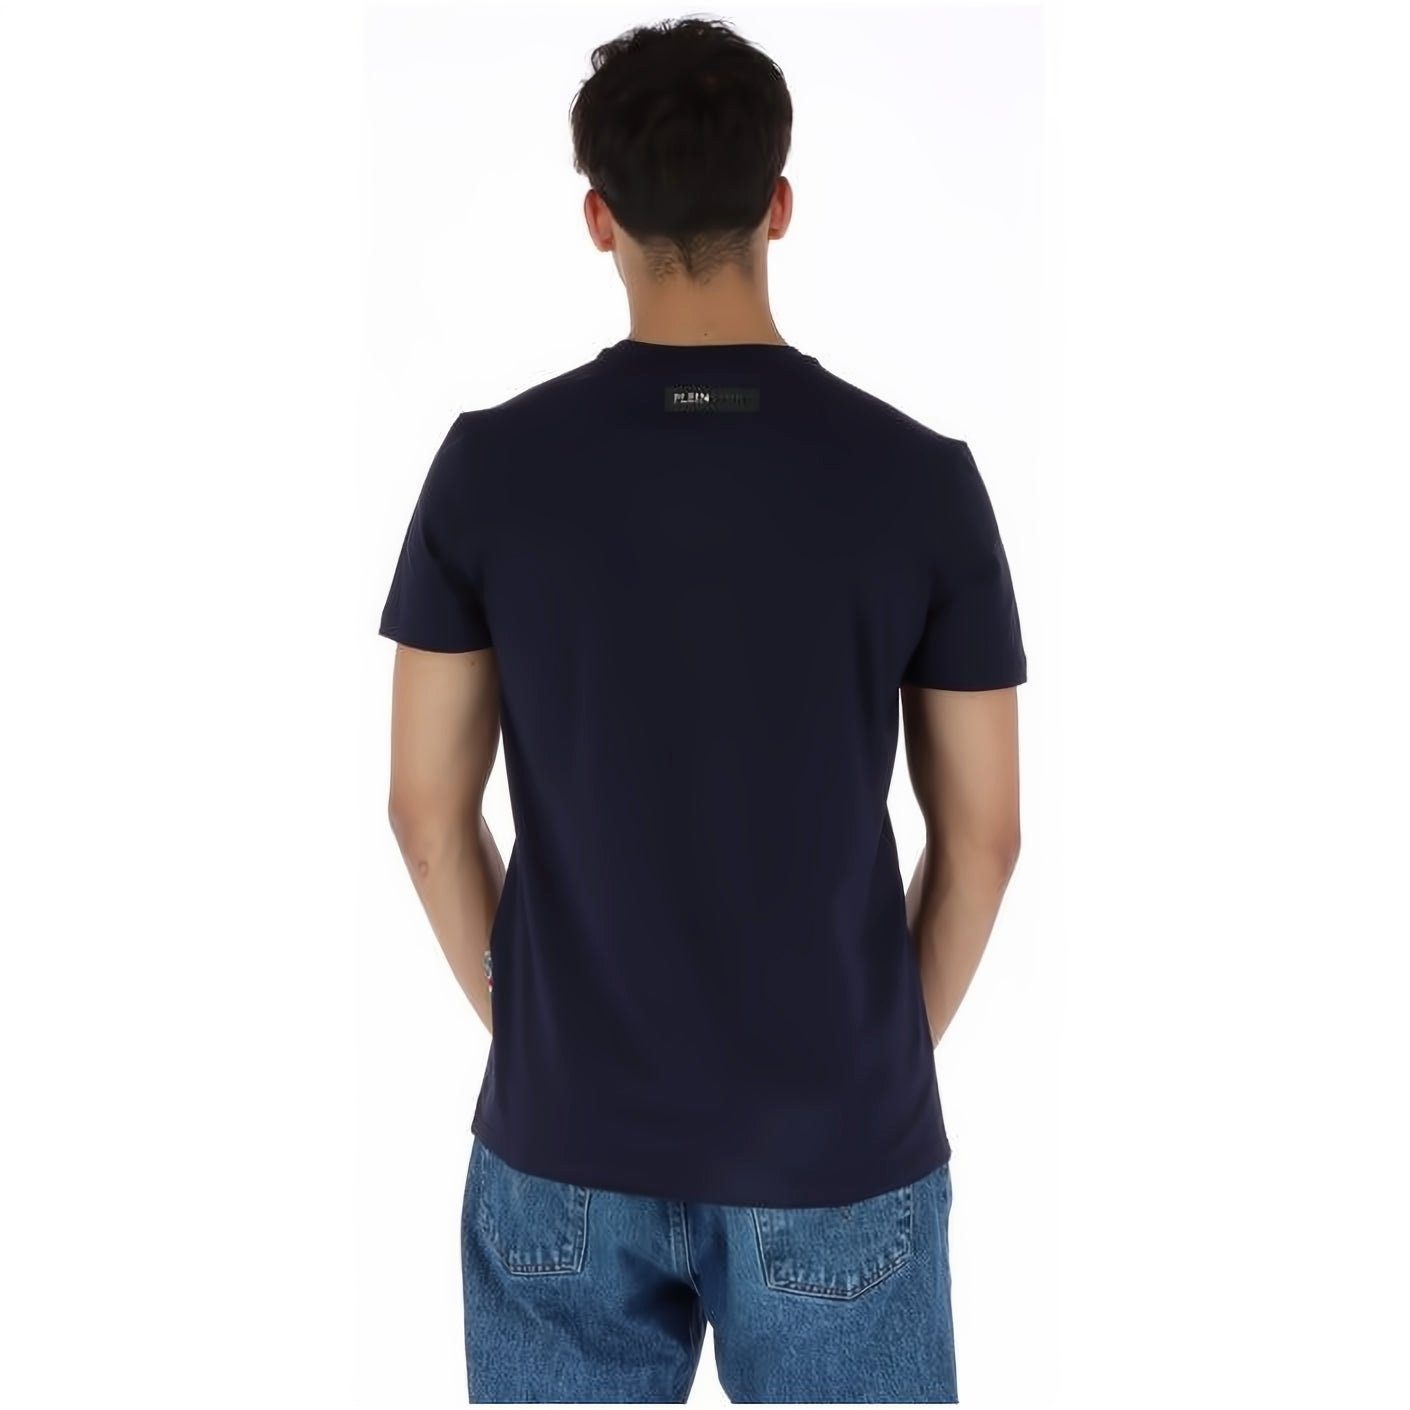 Stylischer Look, T-Shirt NECK vielfältige SPORT hoher ROUND Tragekomfort, PLEIN Farbauswahl